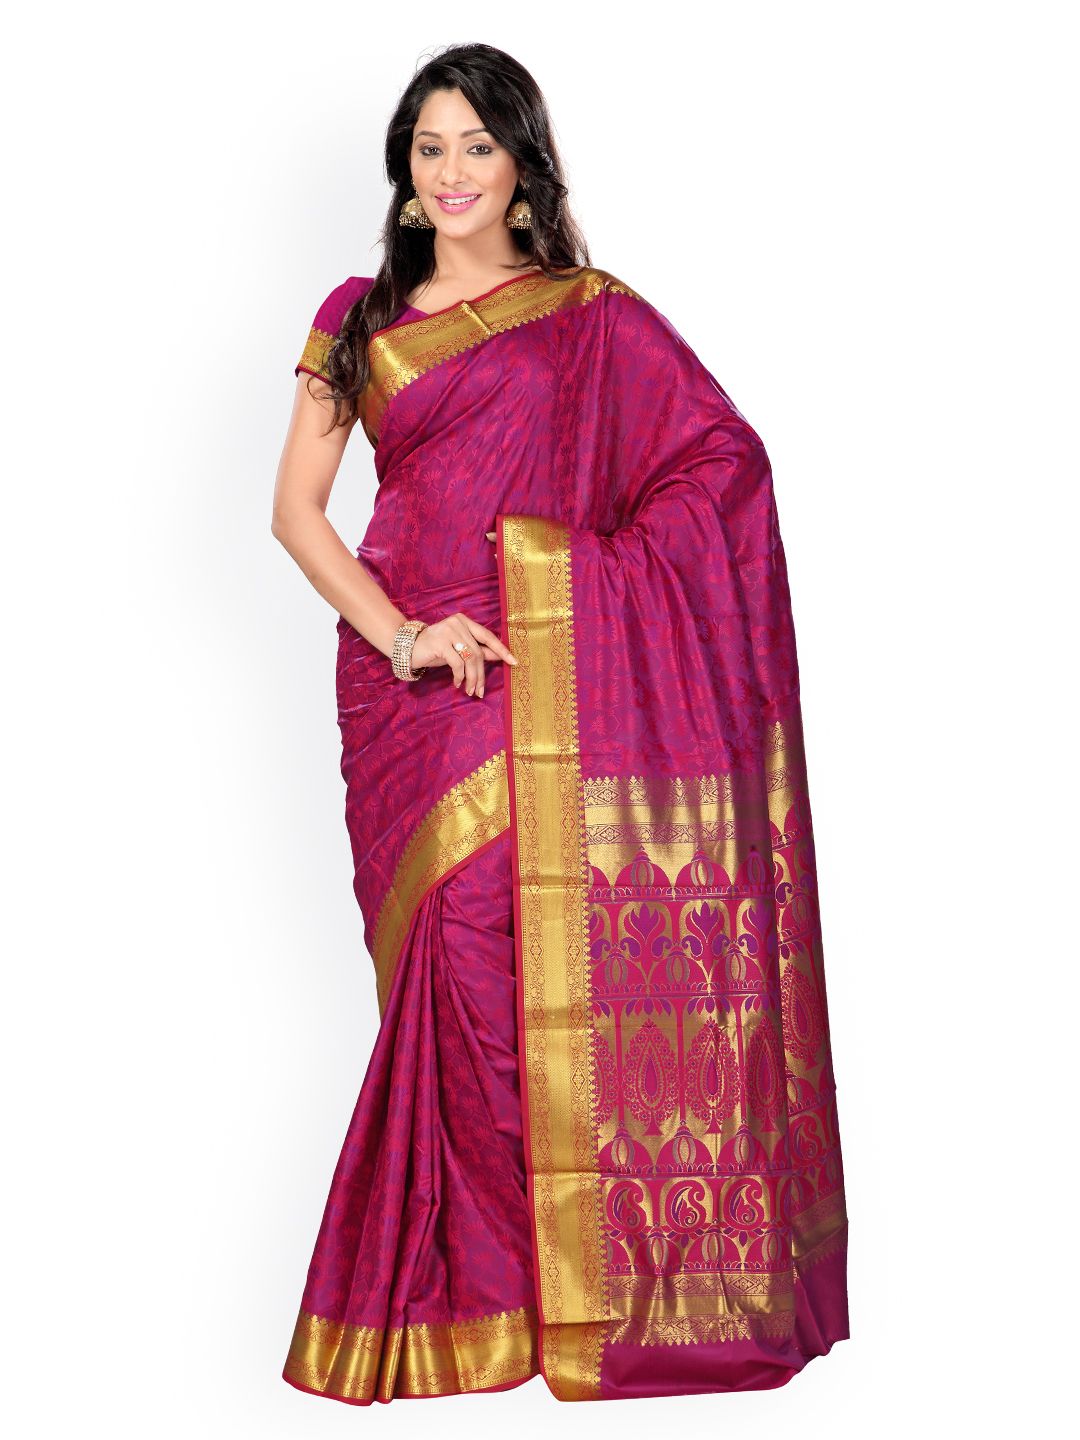 Varkala Silk Sarees Magenta Jacquard Art Silk Traditional Saree Price in India